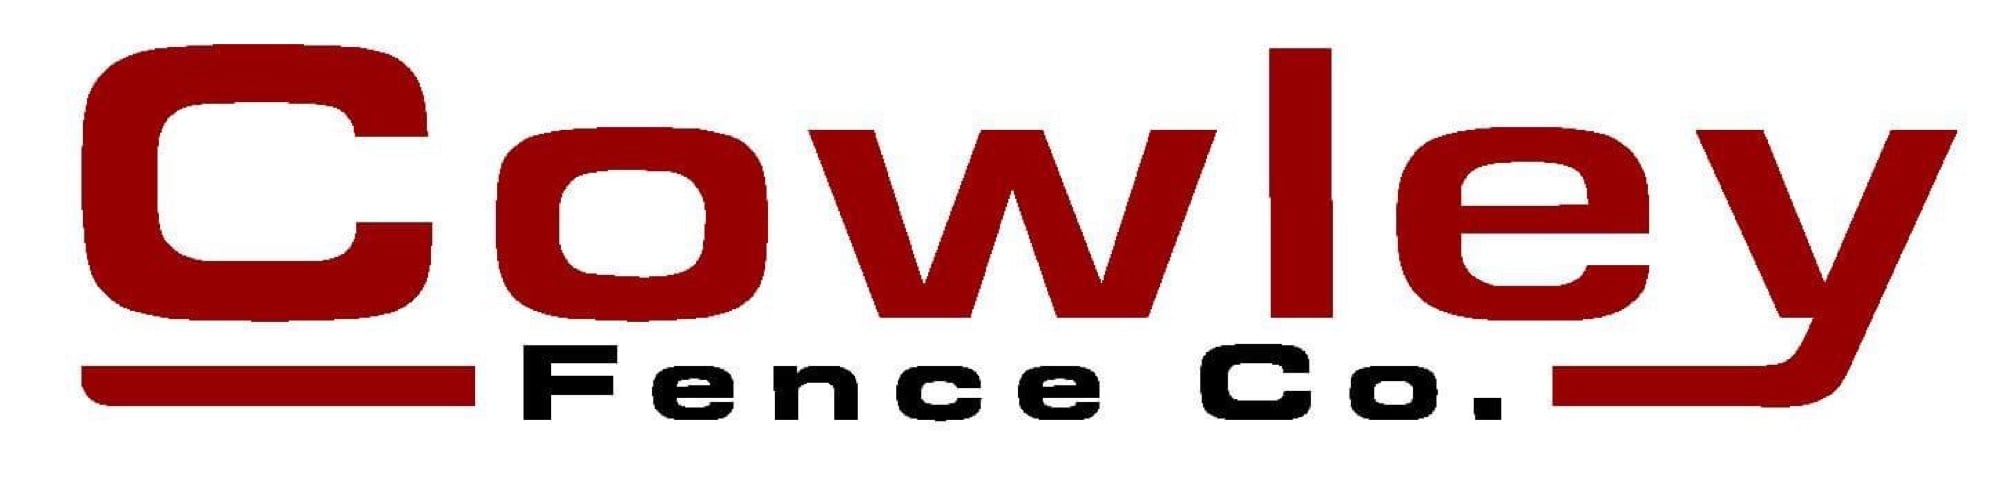 Cowley Fence Company LLC Logo